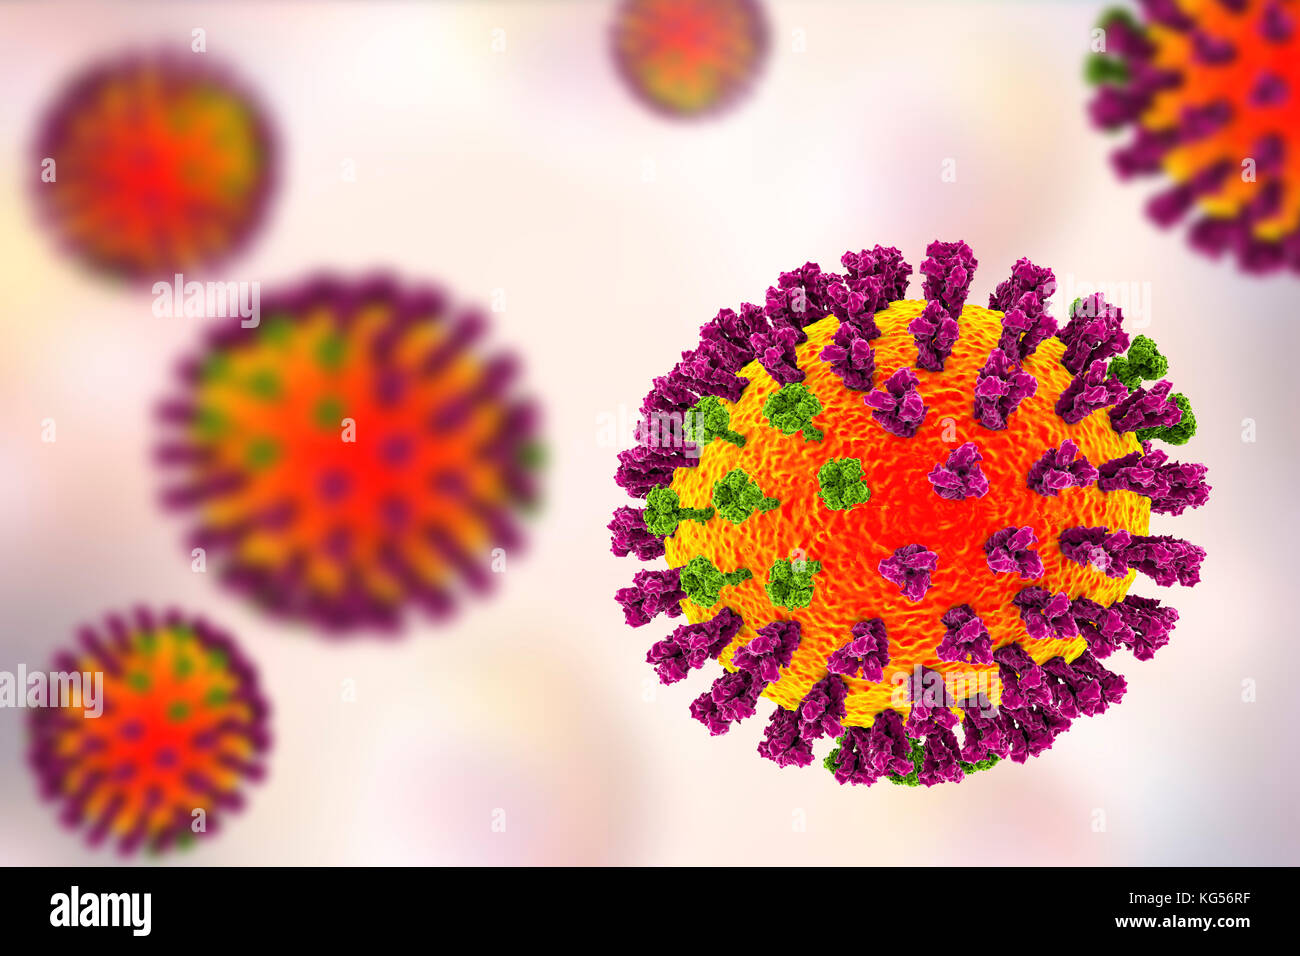 Les virus de la grippe, l'illustration de l'ordinateur. Chaque virus est constitué d'un noyau d'ARN (acide ribonucléique) le matériel génétique entouré par une couche de protéines (orange). Intégré dans les armoiries sont des protéines de surface (pics). Il y a deux types de protéines de surface, l'hémagglutinine (violet) et de la neuraminidase (vert), et chaque existe dans plusieurs sous-types. Les deux protéines de surface sont associées à la pathogénicité d'un virus. L'hémagglutinine se lie aux cellules de l'hôte, ce qui permet au virus d'entrer et de les reproduire. La neuraminidase permet à de nouvelles particules pour quitter l'hôte après la réplication. Banque D'Images